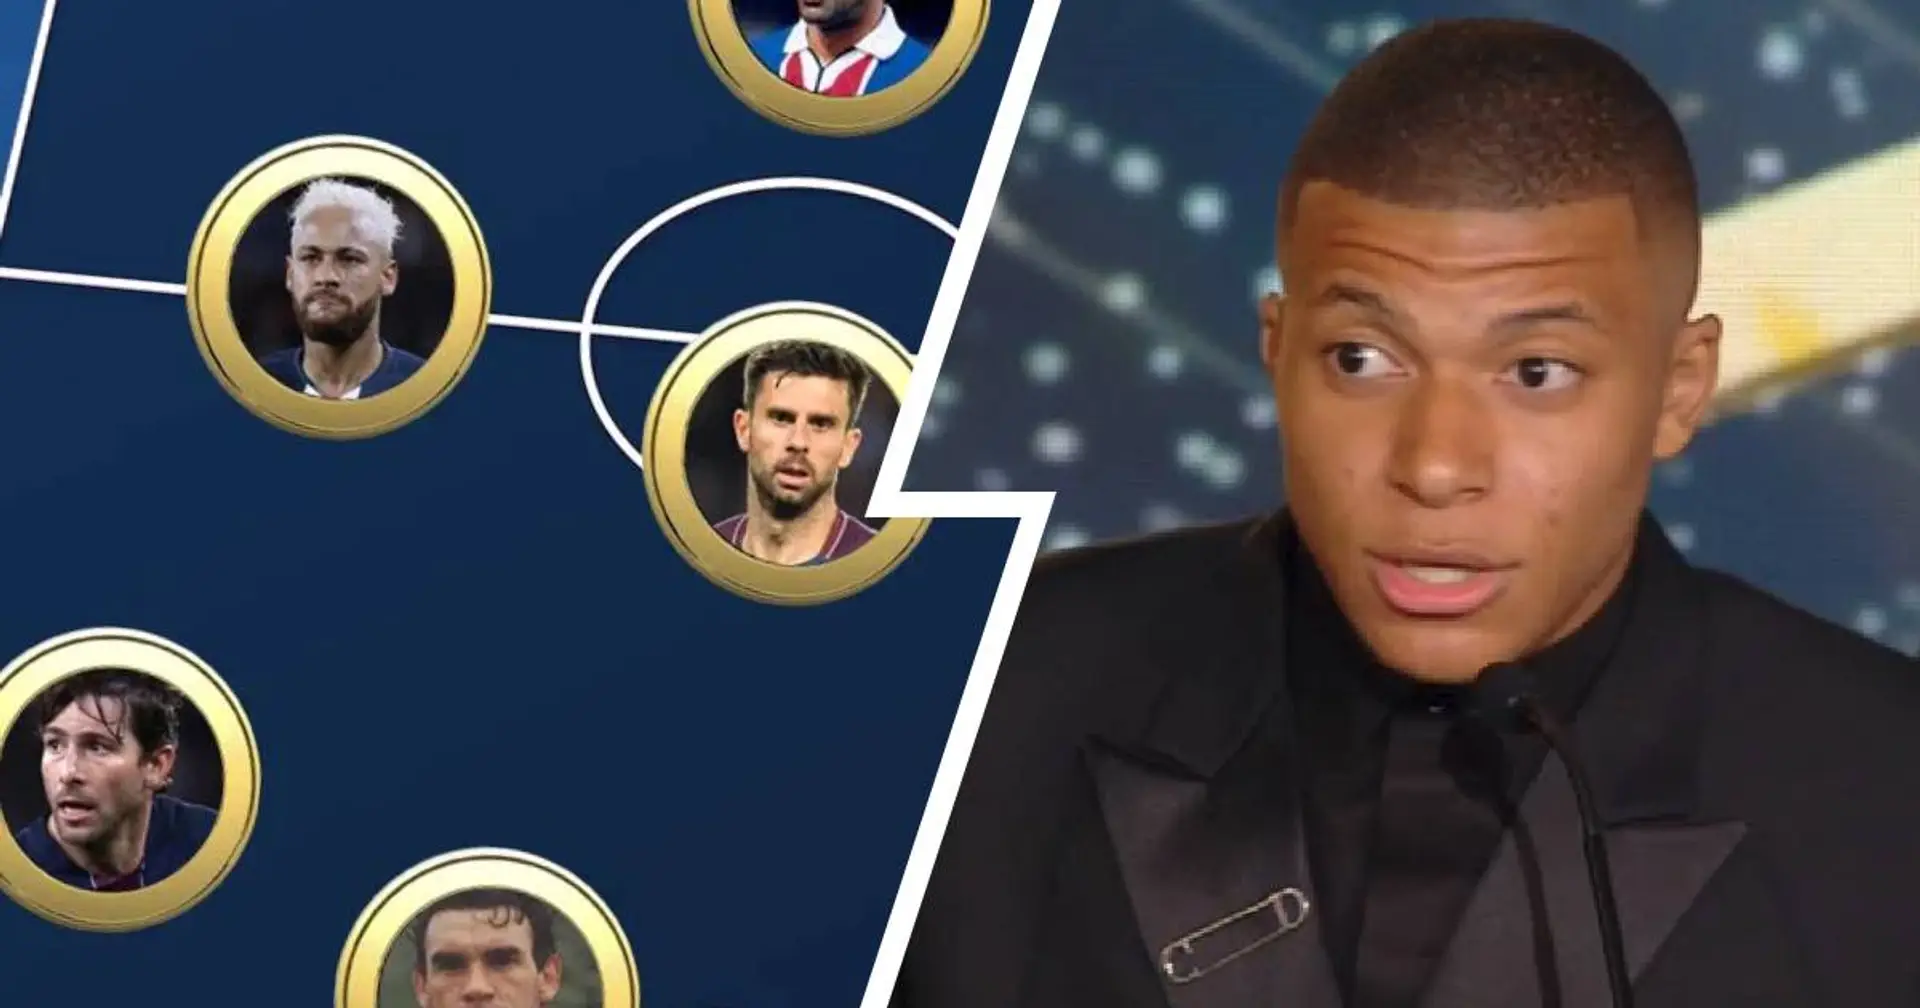 Un XI All Stars du PSG a été dévoilé sur Twitter - Kylian Mbappé et Marco Verratti sur le banc